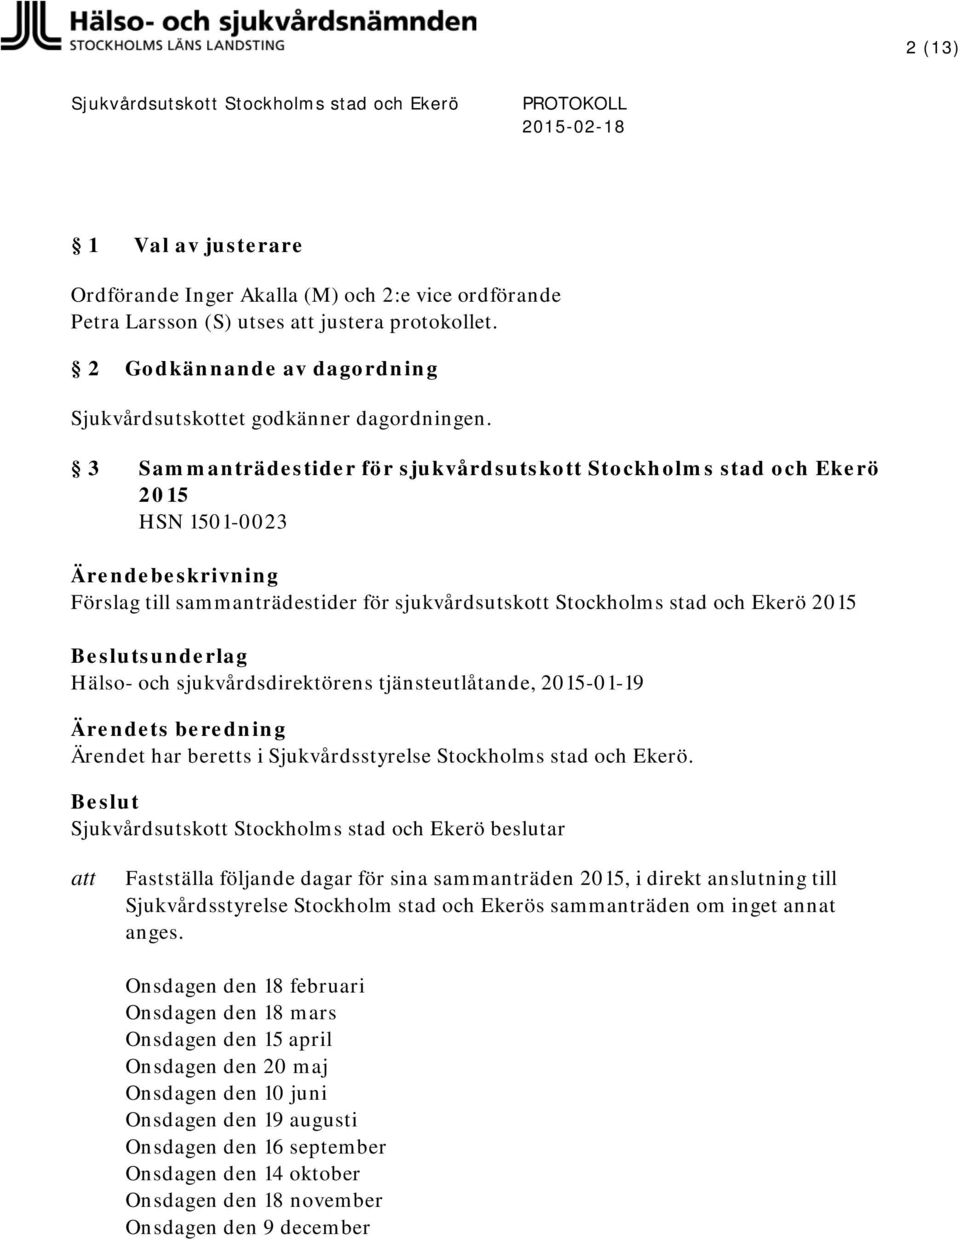 sjukvårdsdirektörens tjänsteutlåtande, 2015-01-19 Fastställa följande dagar för sina sammanträden 2015, i direkt anslutning till Sjukvårdsstyrelse Stockholm stad och Ekerös sammanträden om inget